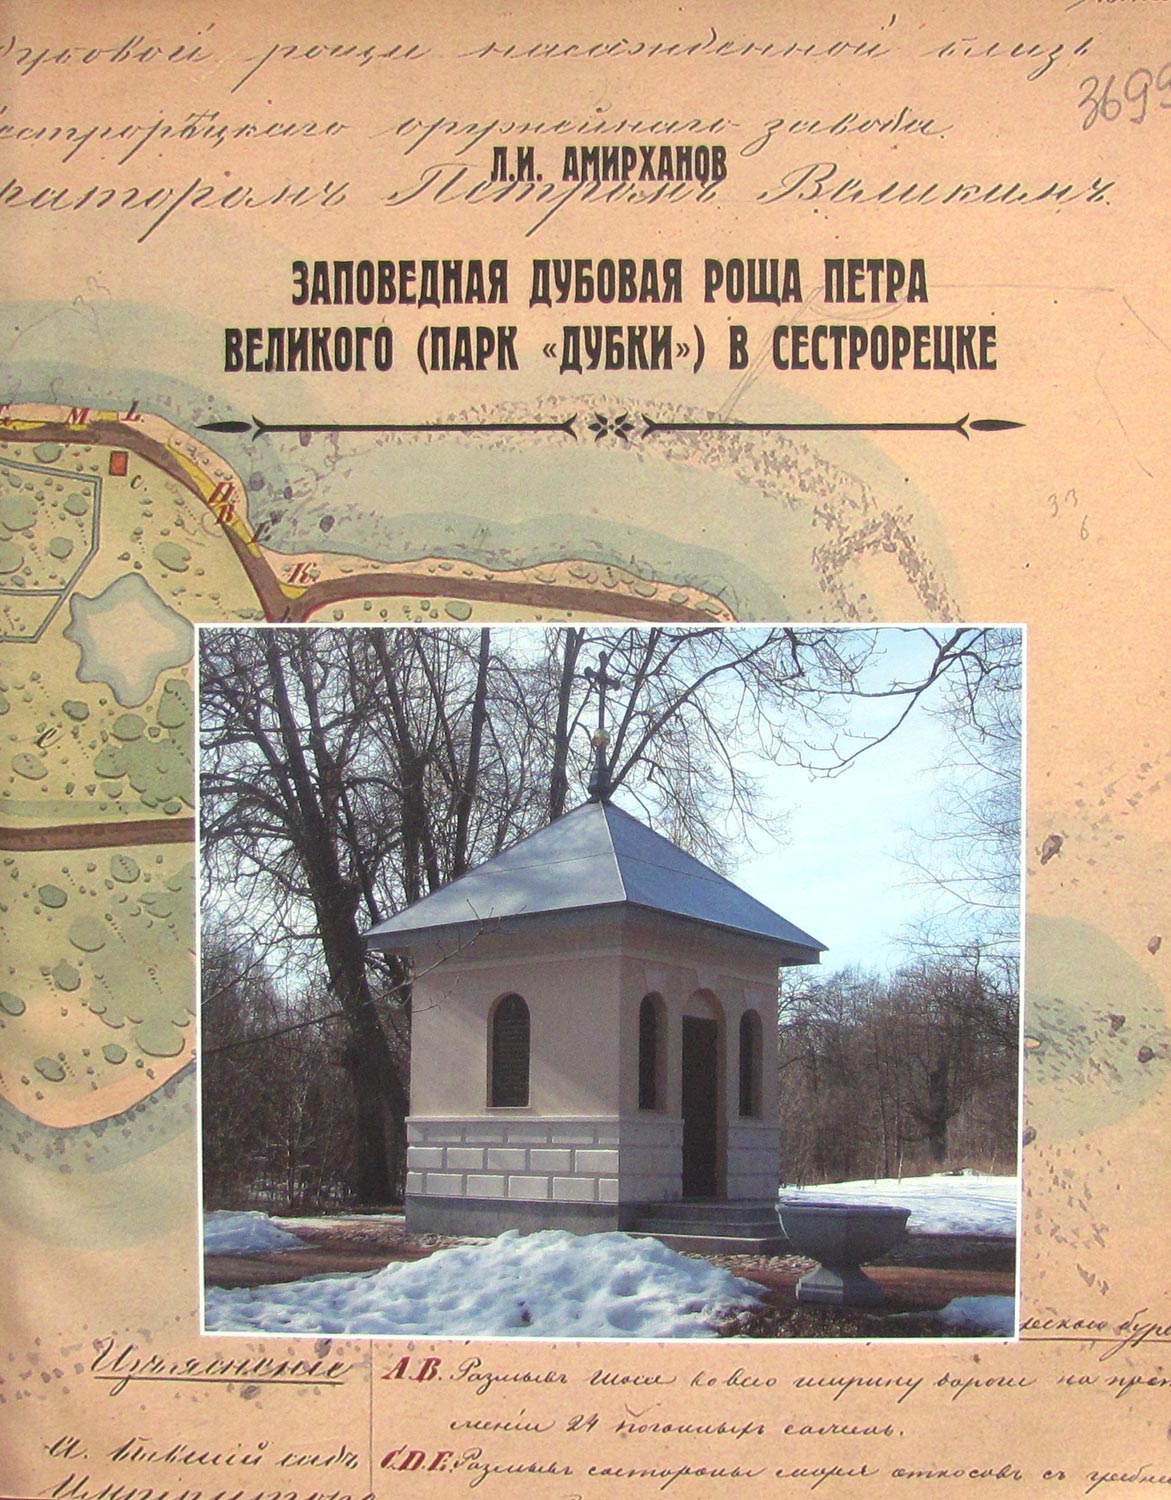 Заповедная дубовая роща Петра Великого (парк "Дубки") в Сестрорецке